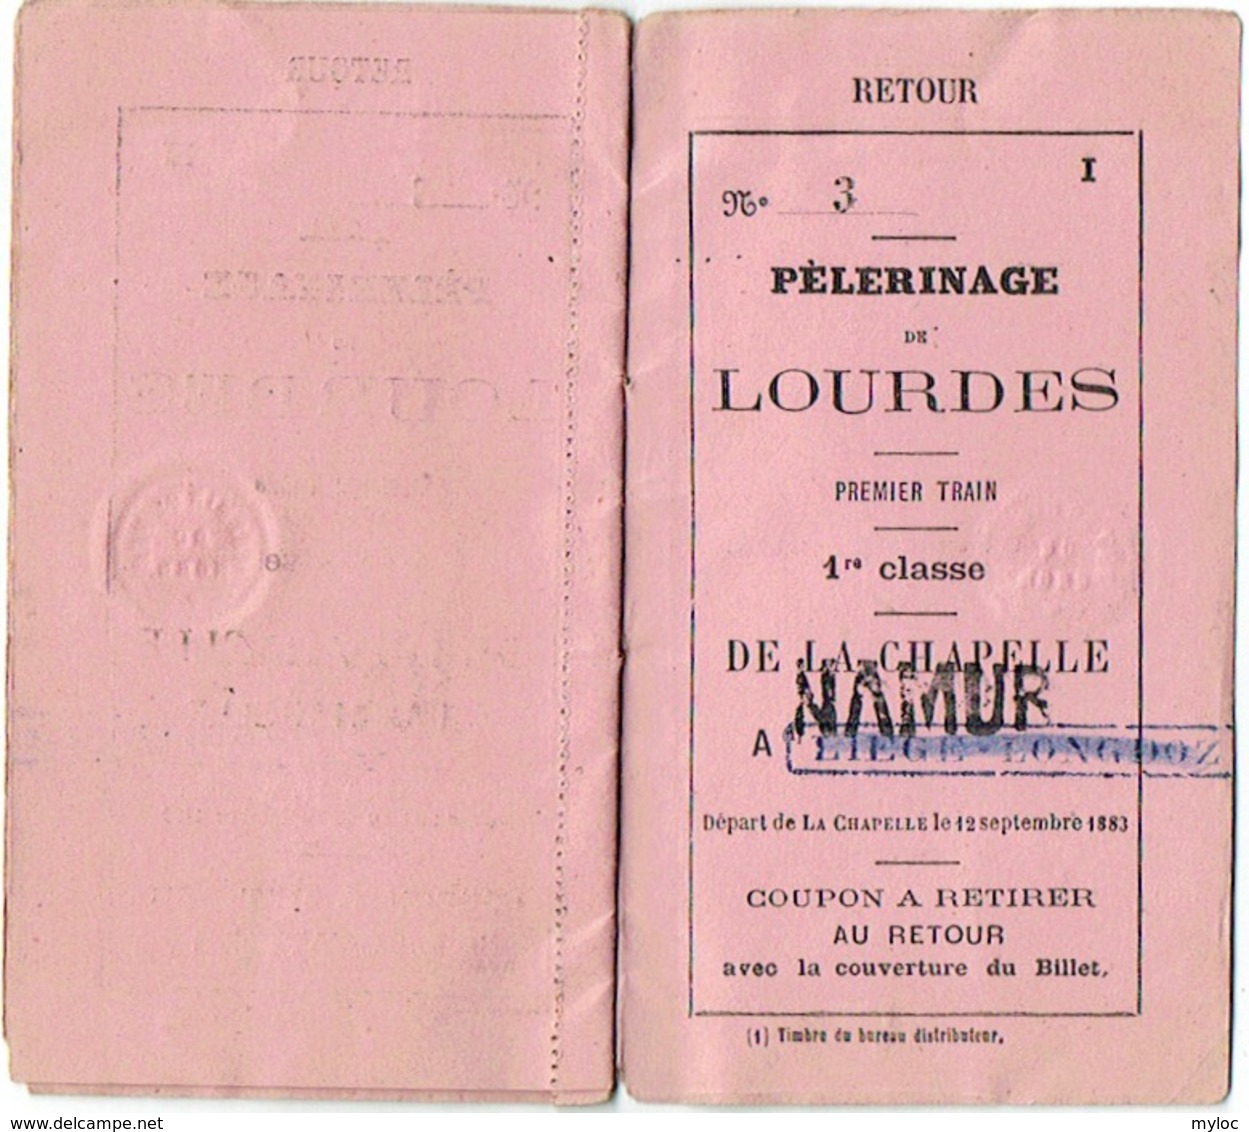 Chemin De Fer. Carnet De Coupons. Pélerinage De Lourdes. Train 1re Classe De Liège à Lourdes  1883. - Europe